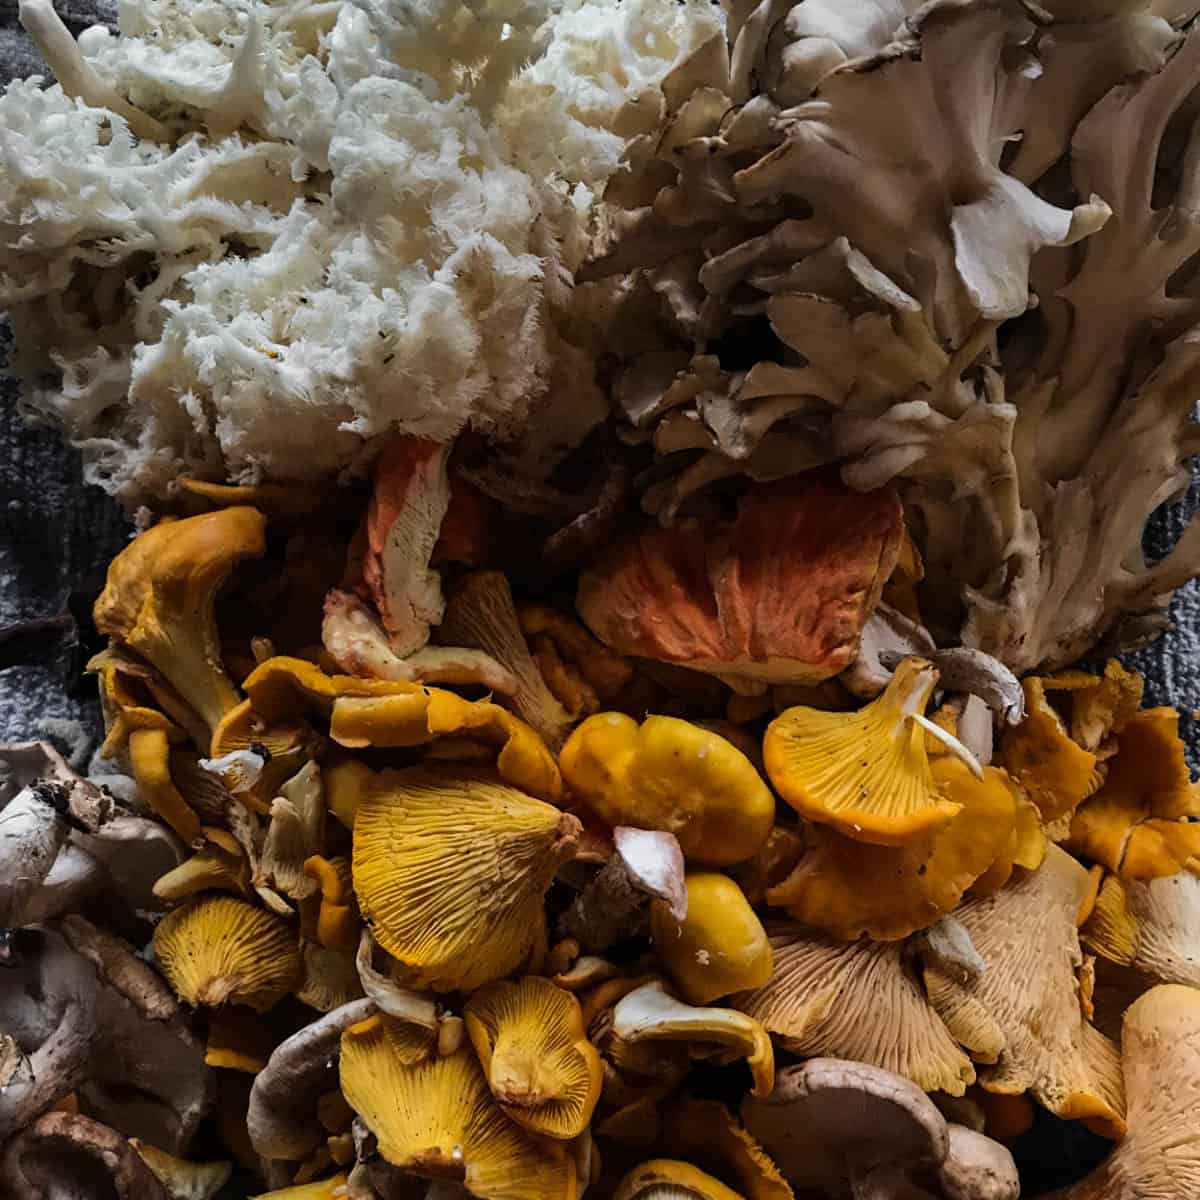 Chanterelle, hericium, maitake, chicken of the woods mushrooms